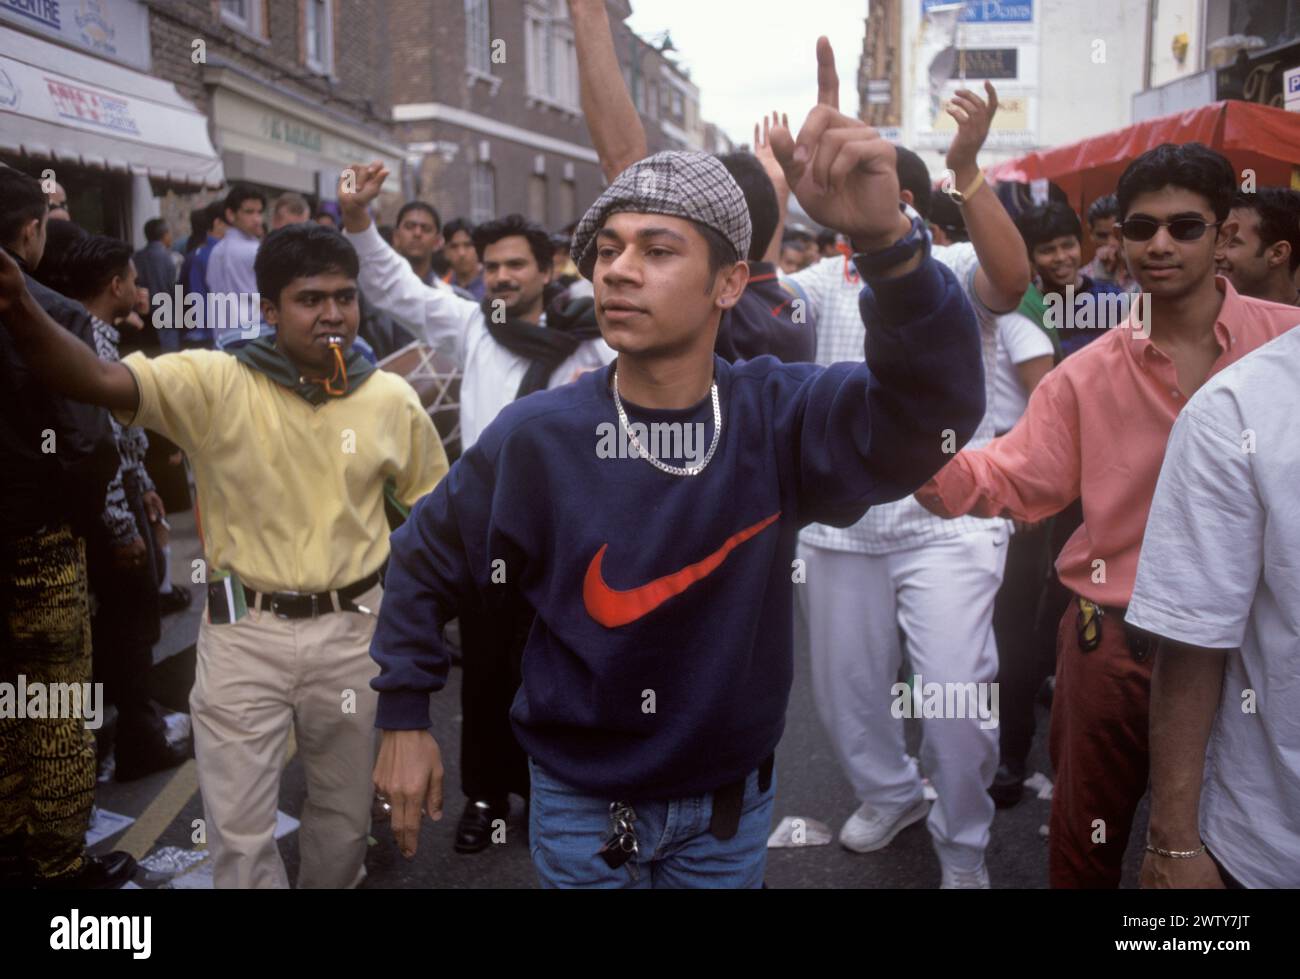 Die muslimische Gemeinde Bangladeschs in Brick Lane Whitechapel feiert das islamische Neujahr, auch Hijri-Neujahr genannt. Bangladesch Teenager Jungen tanzen durch die Straße. Einer trägt ein Sweatshirt mit einem riesigen roten „Häkchen“ das Nike Logo – Swoosh Logo. Juli 1999 1990: UK HOMER SYKES Stockfoto